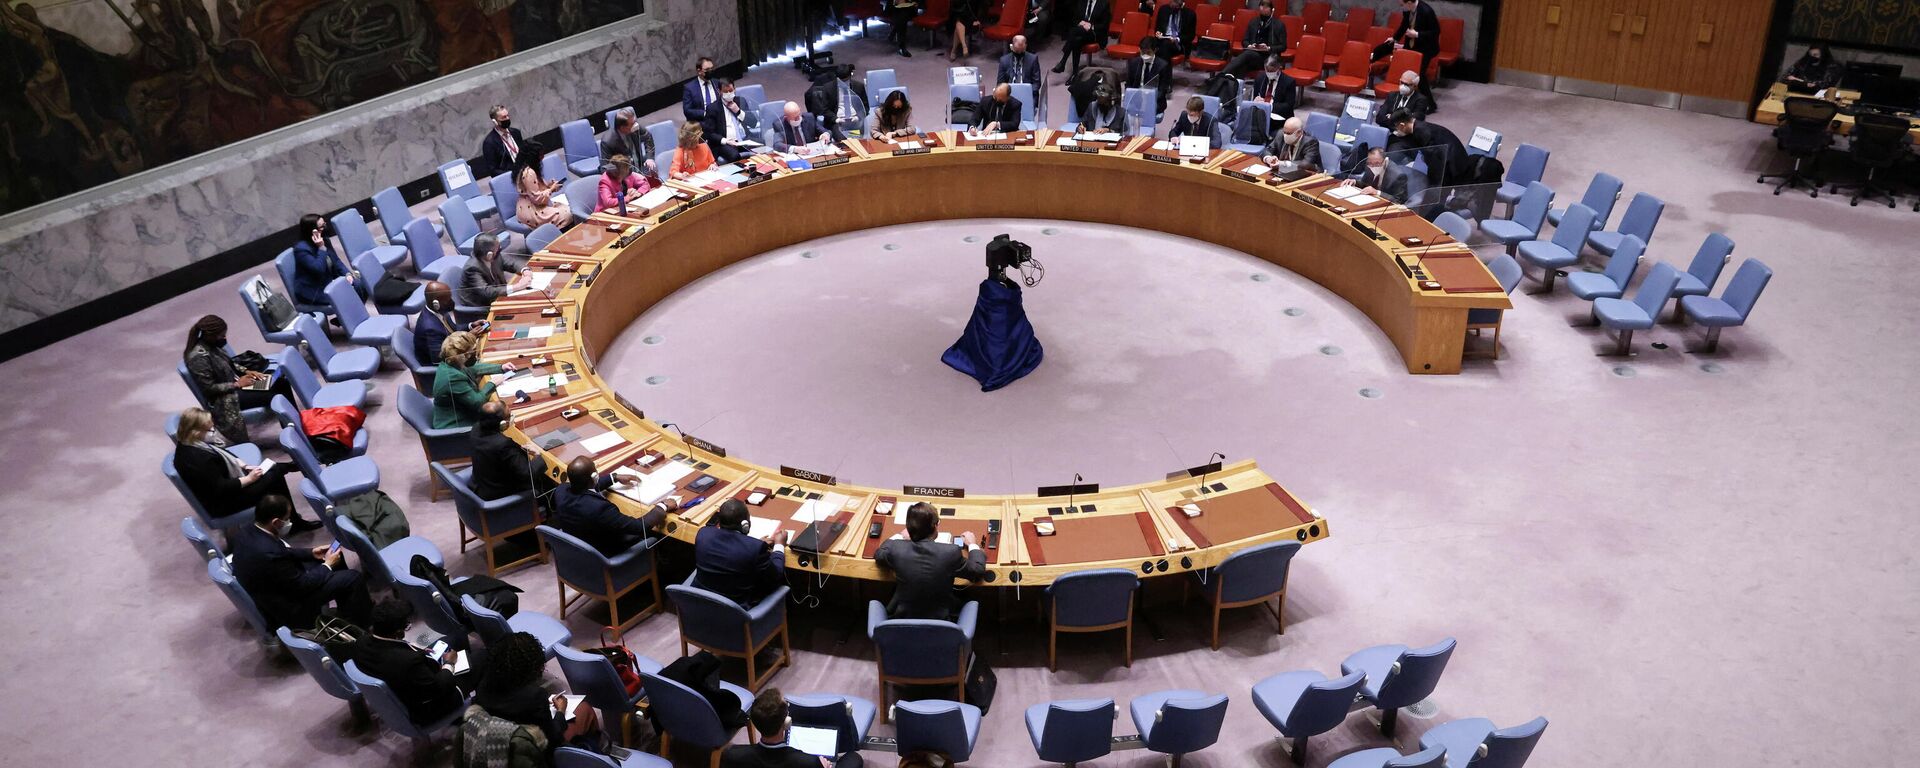 جلسة نقاش مجلس الأمن الدولي حول أزمة أوكرانيا وروسيا، الأمم المتحدة، نيويورك، الولايات المتحدة 31 يناير 2022  - سبوتنيك عربي, 1920, 22.02.2022